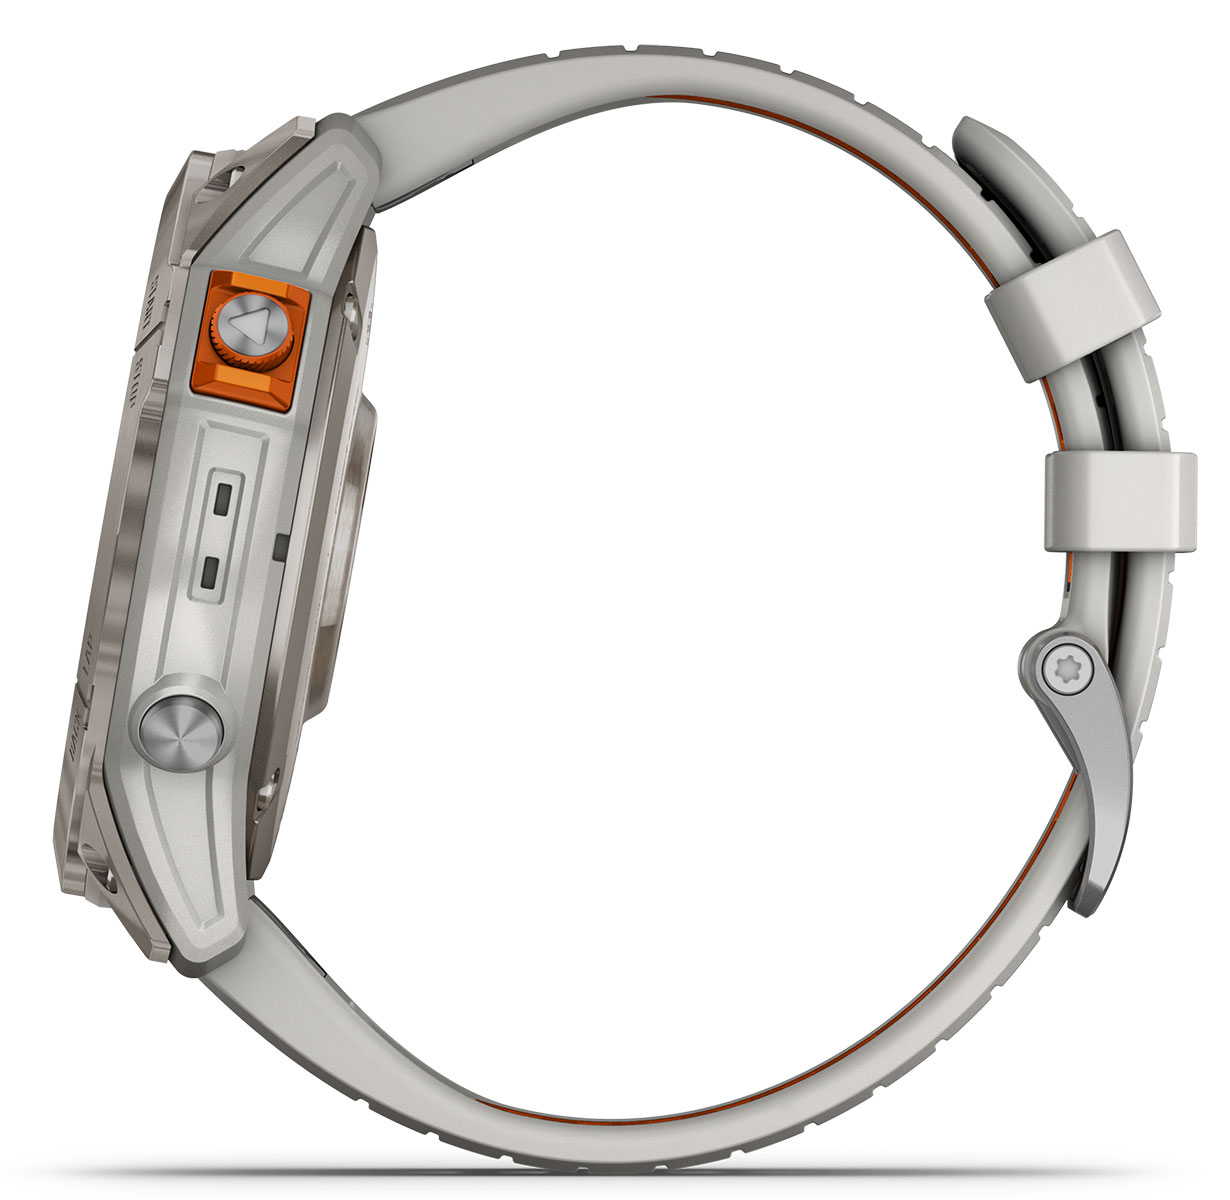 Fenix 7 Pro titanium gray/orange with differend bands for color match  comparison : r/GarminFenix